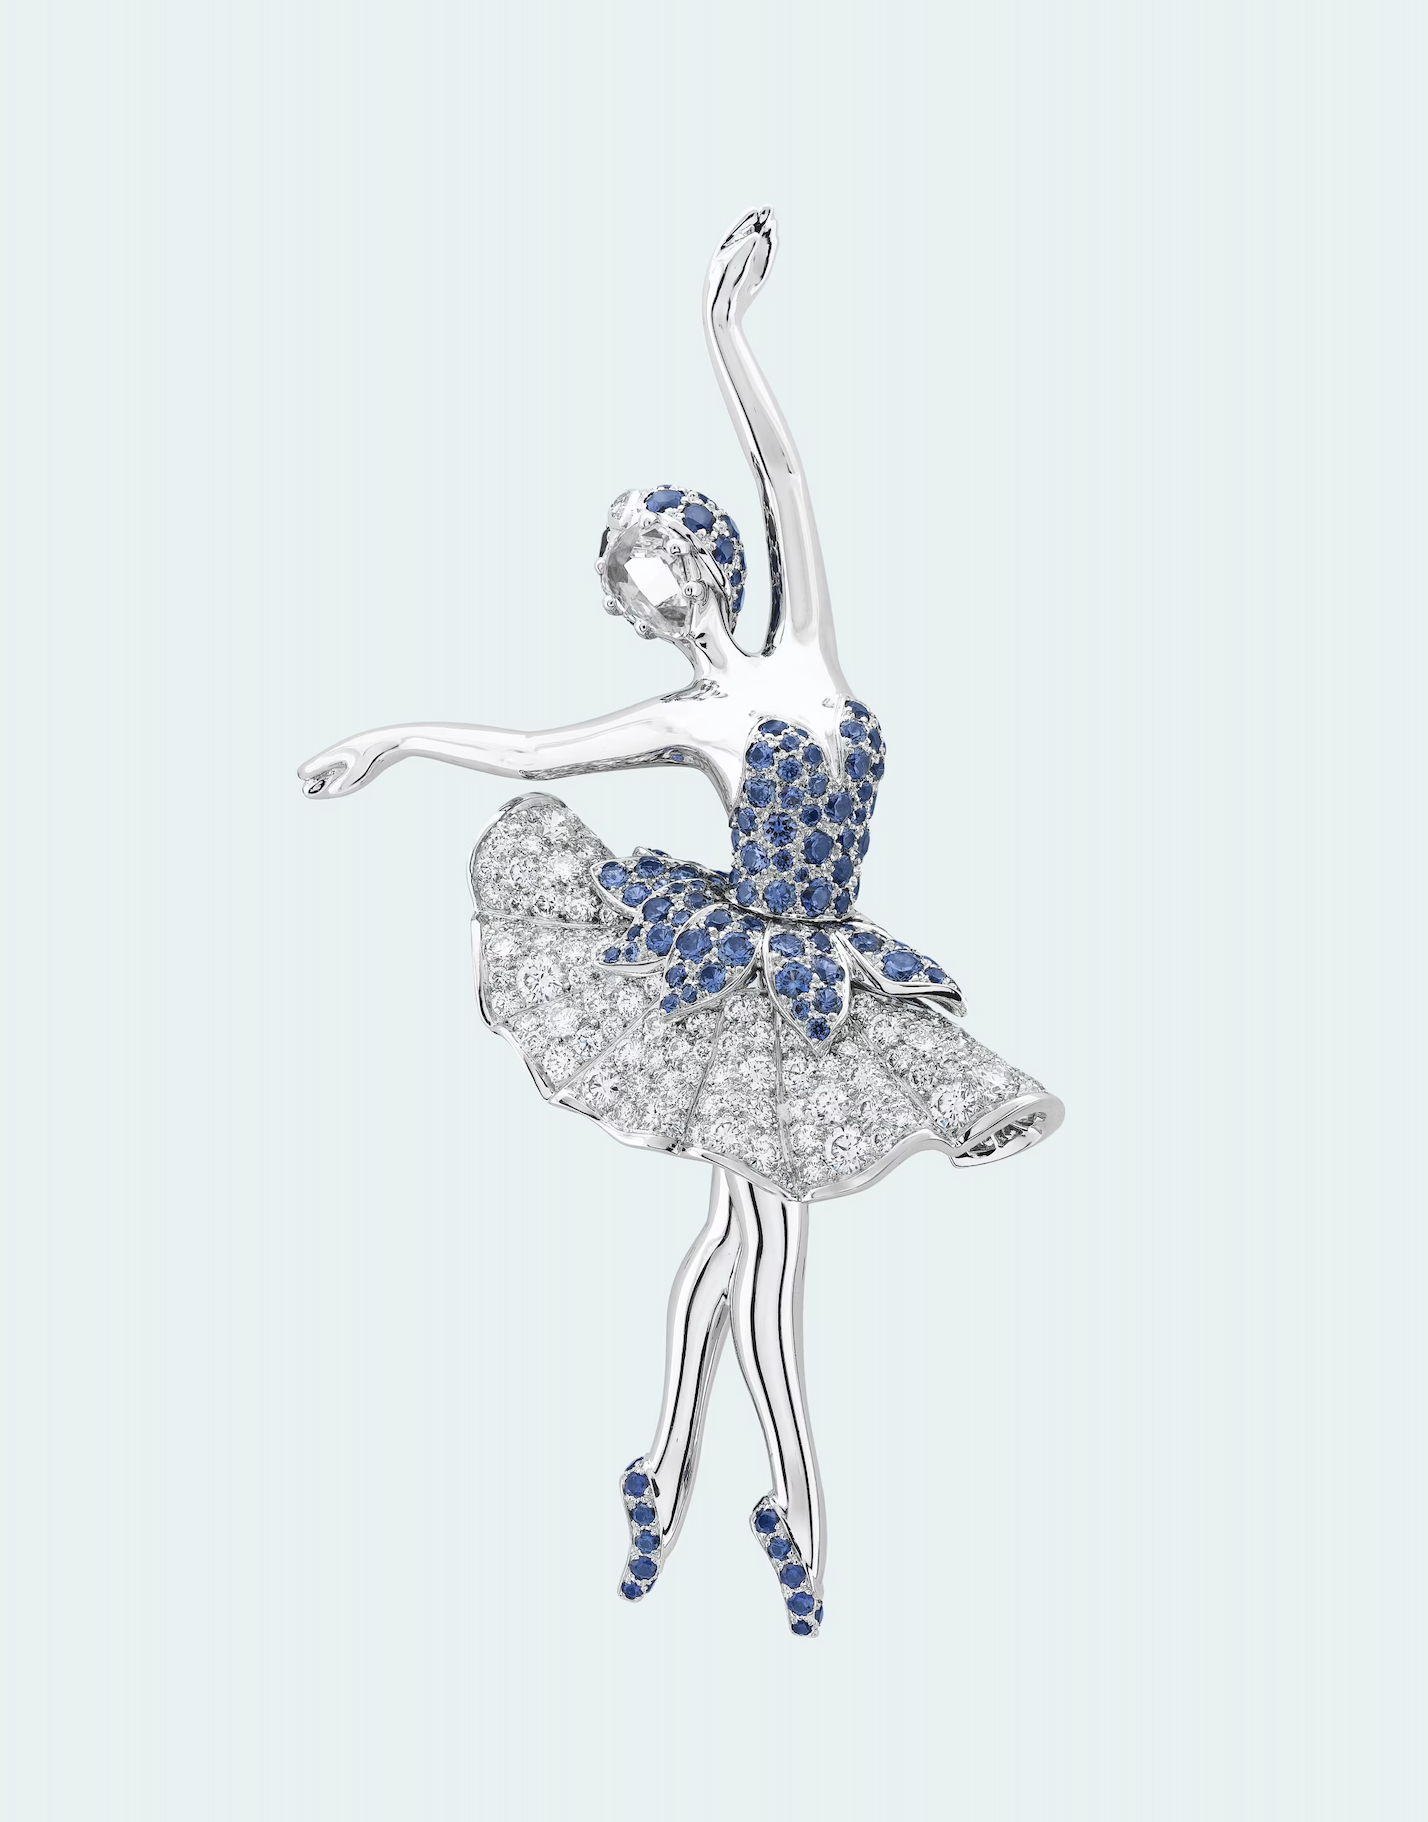 The Story of Van Cleef & Arpels’ Ballerinas